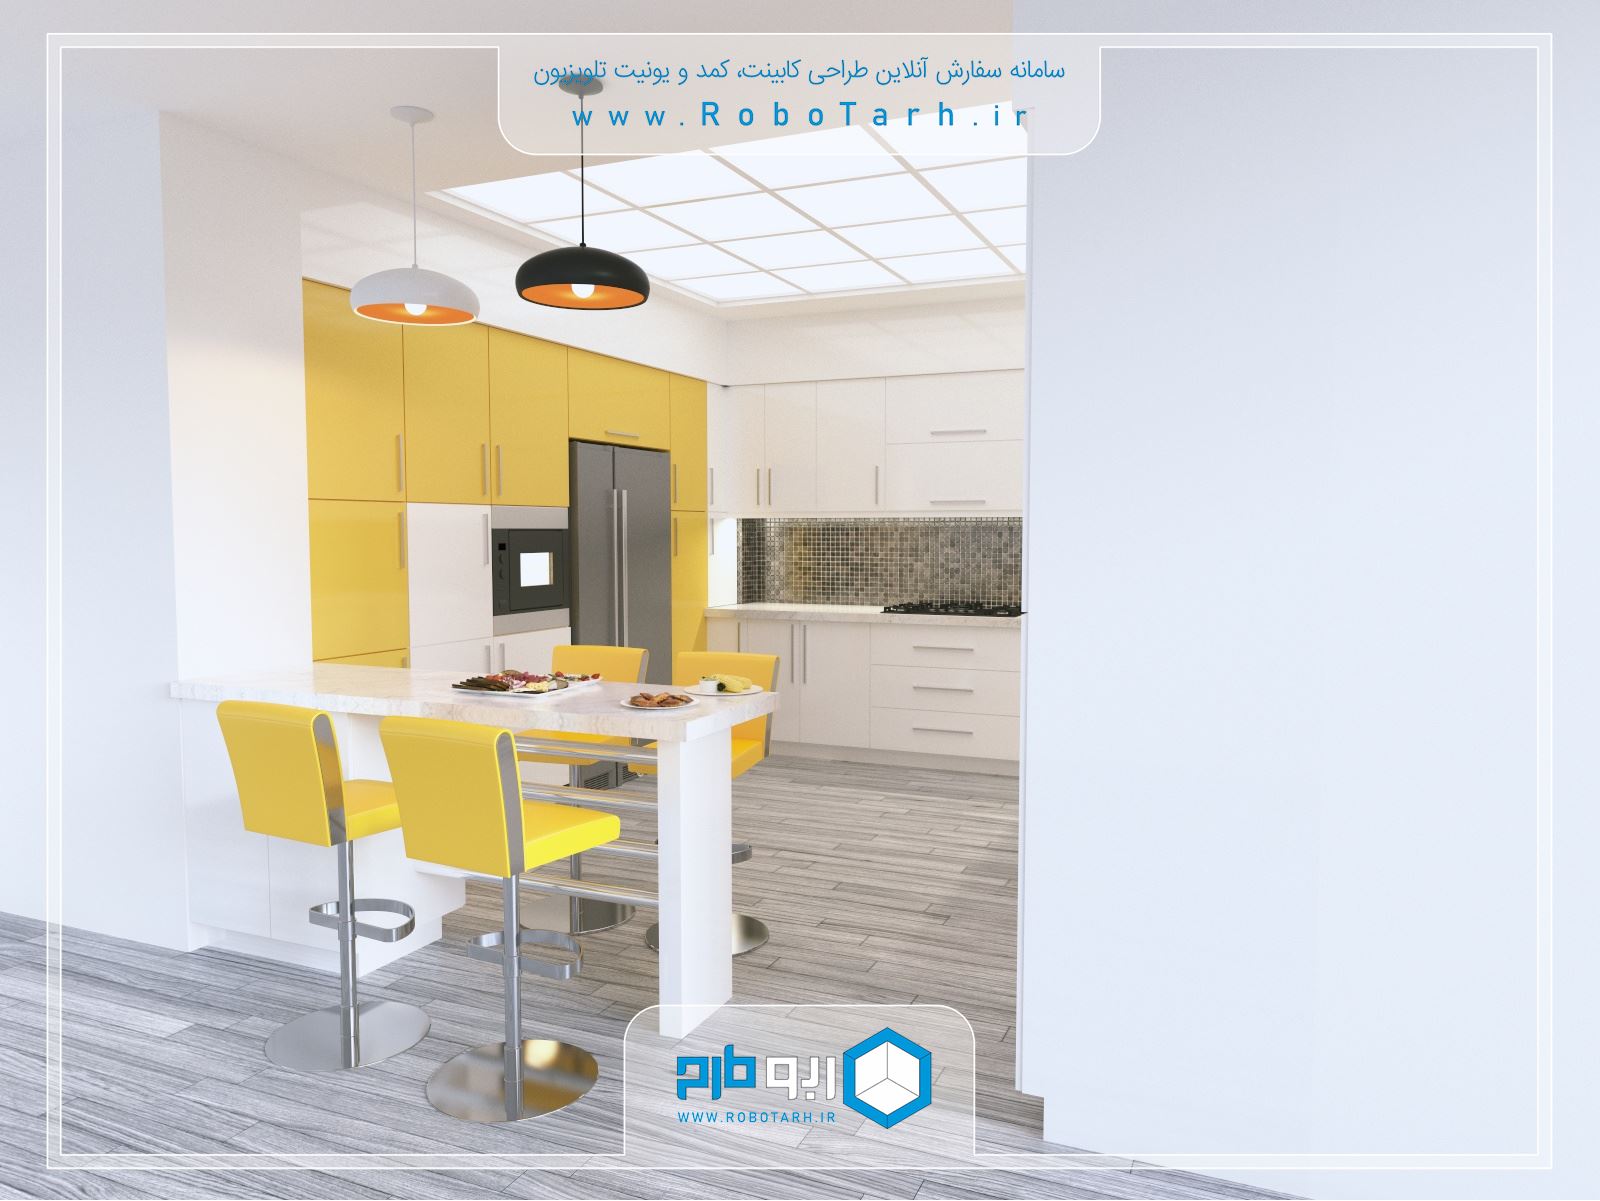 طراحی کابینت آشپزخانه مدرن سفید و زرد رنگ با چیدمان یو شکل - ربوطرح